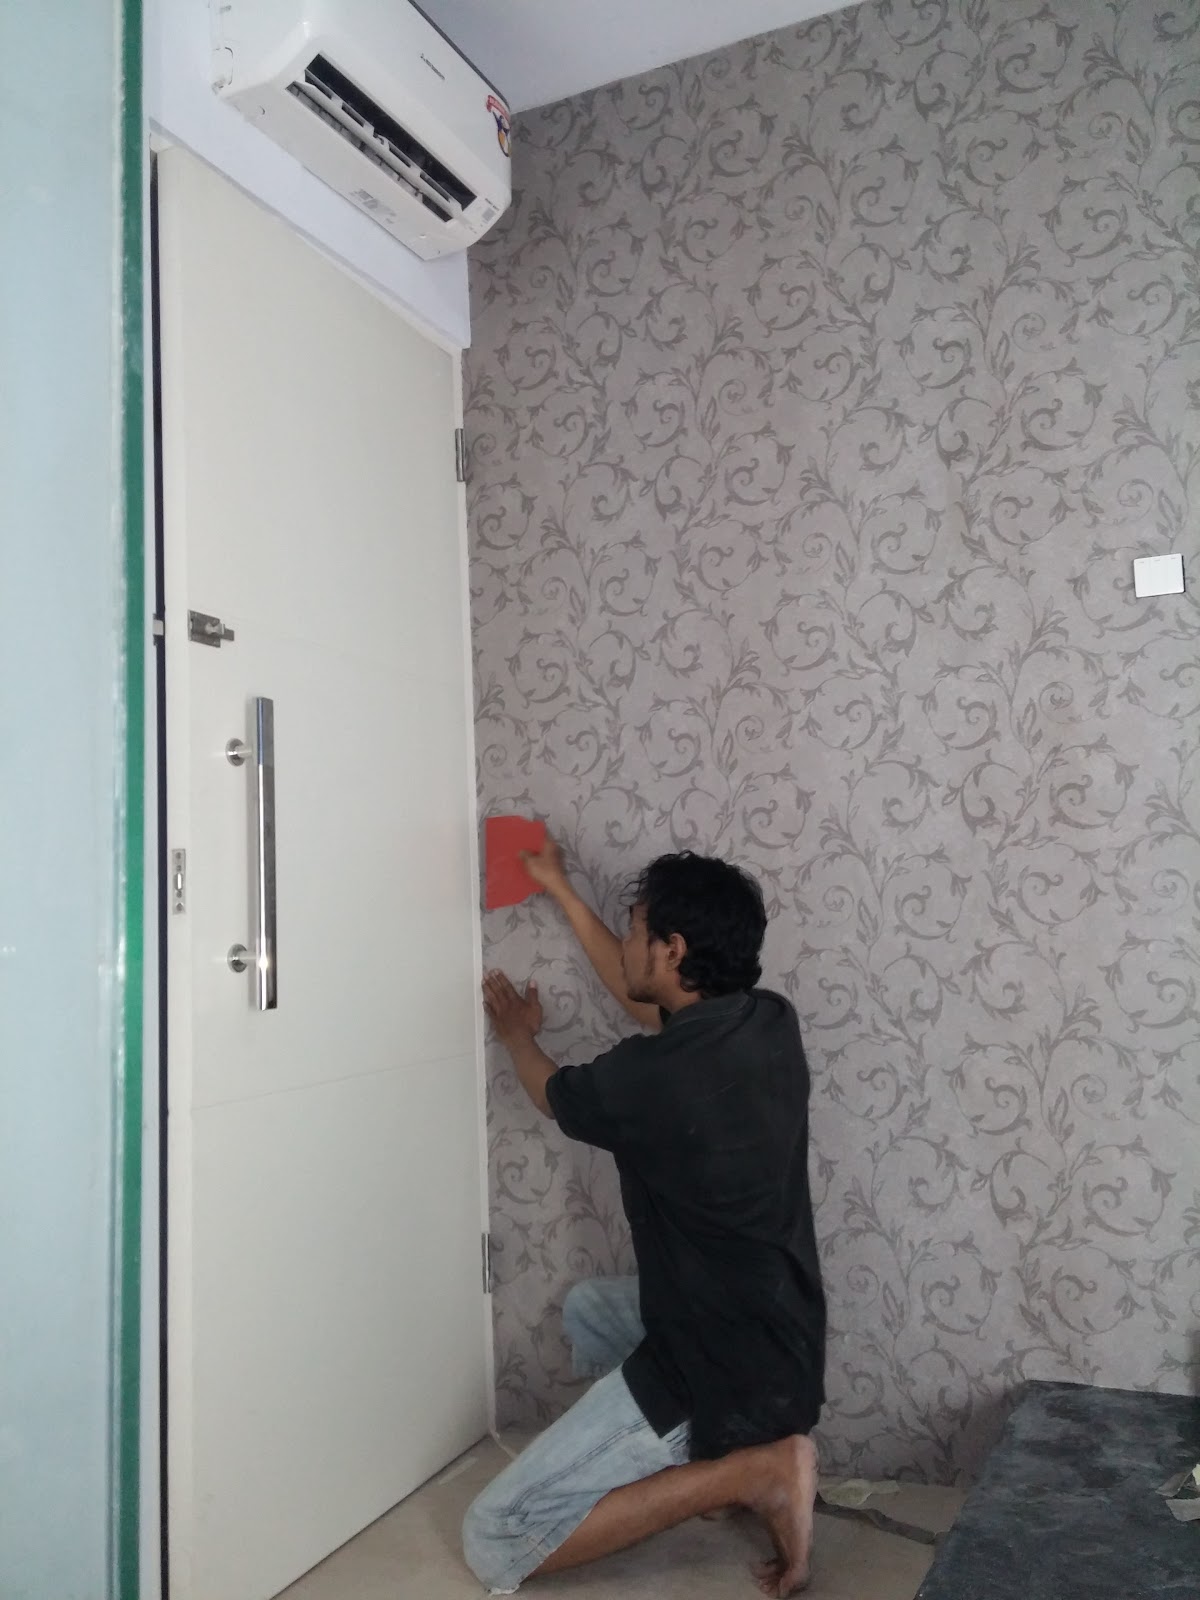 Lowongan Tukang Wallpaper Jepara, Jawa Tengah - Home Door , HD Wallpaper & Backgrounds